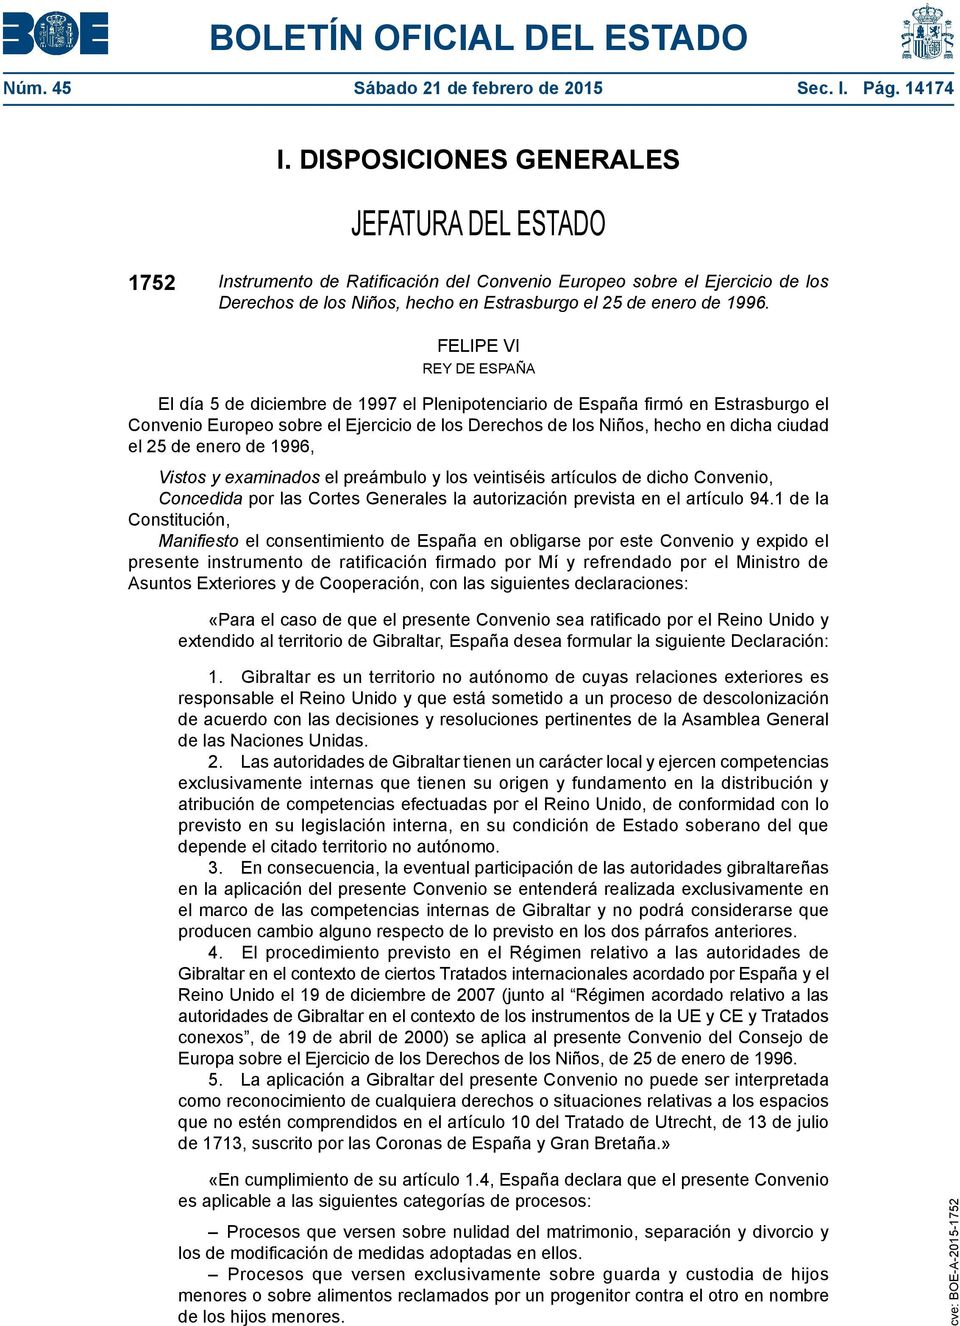 FELIPE VI REY DE ESPAÑA El día 5 de diciembre de 1997 el Plenipotenciario de España firmó en Estrasburgo el Convenio Europeo sobre el Ejercicio de los Derechos de los Niños, hecho en dicha ciudad el